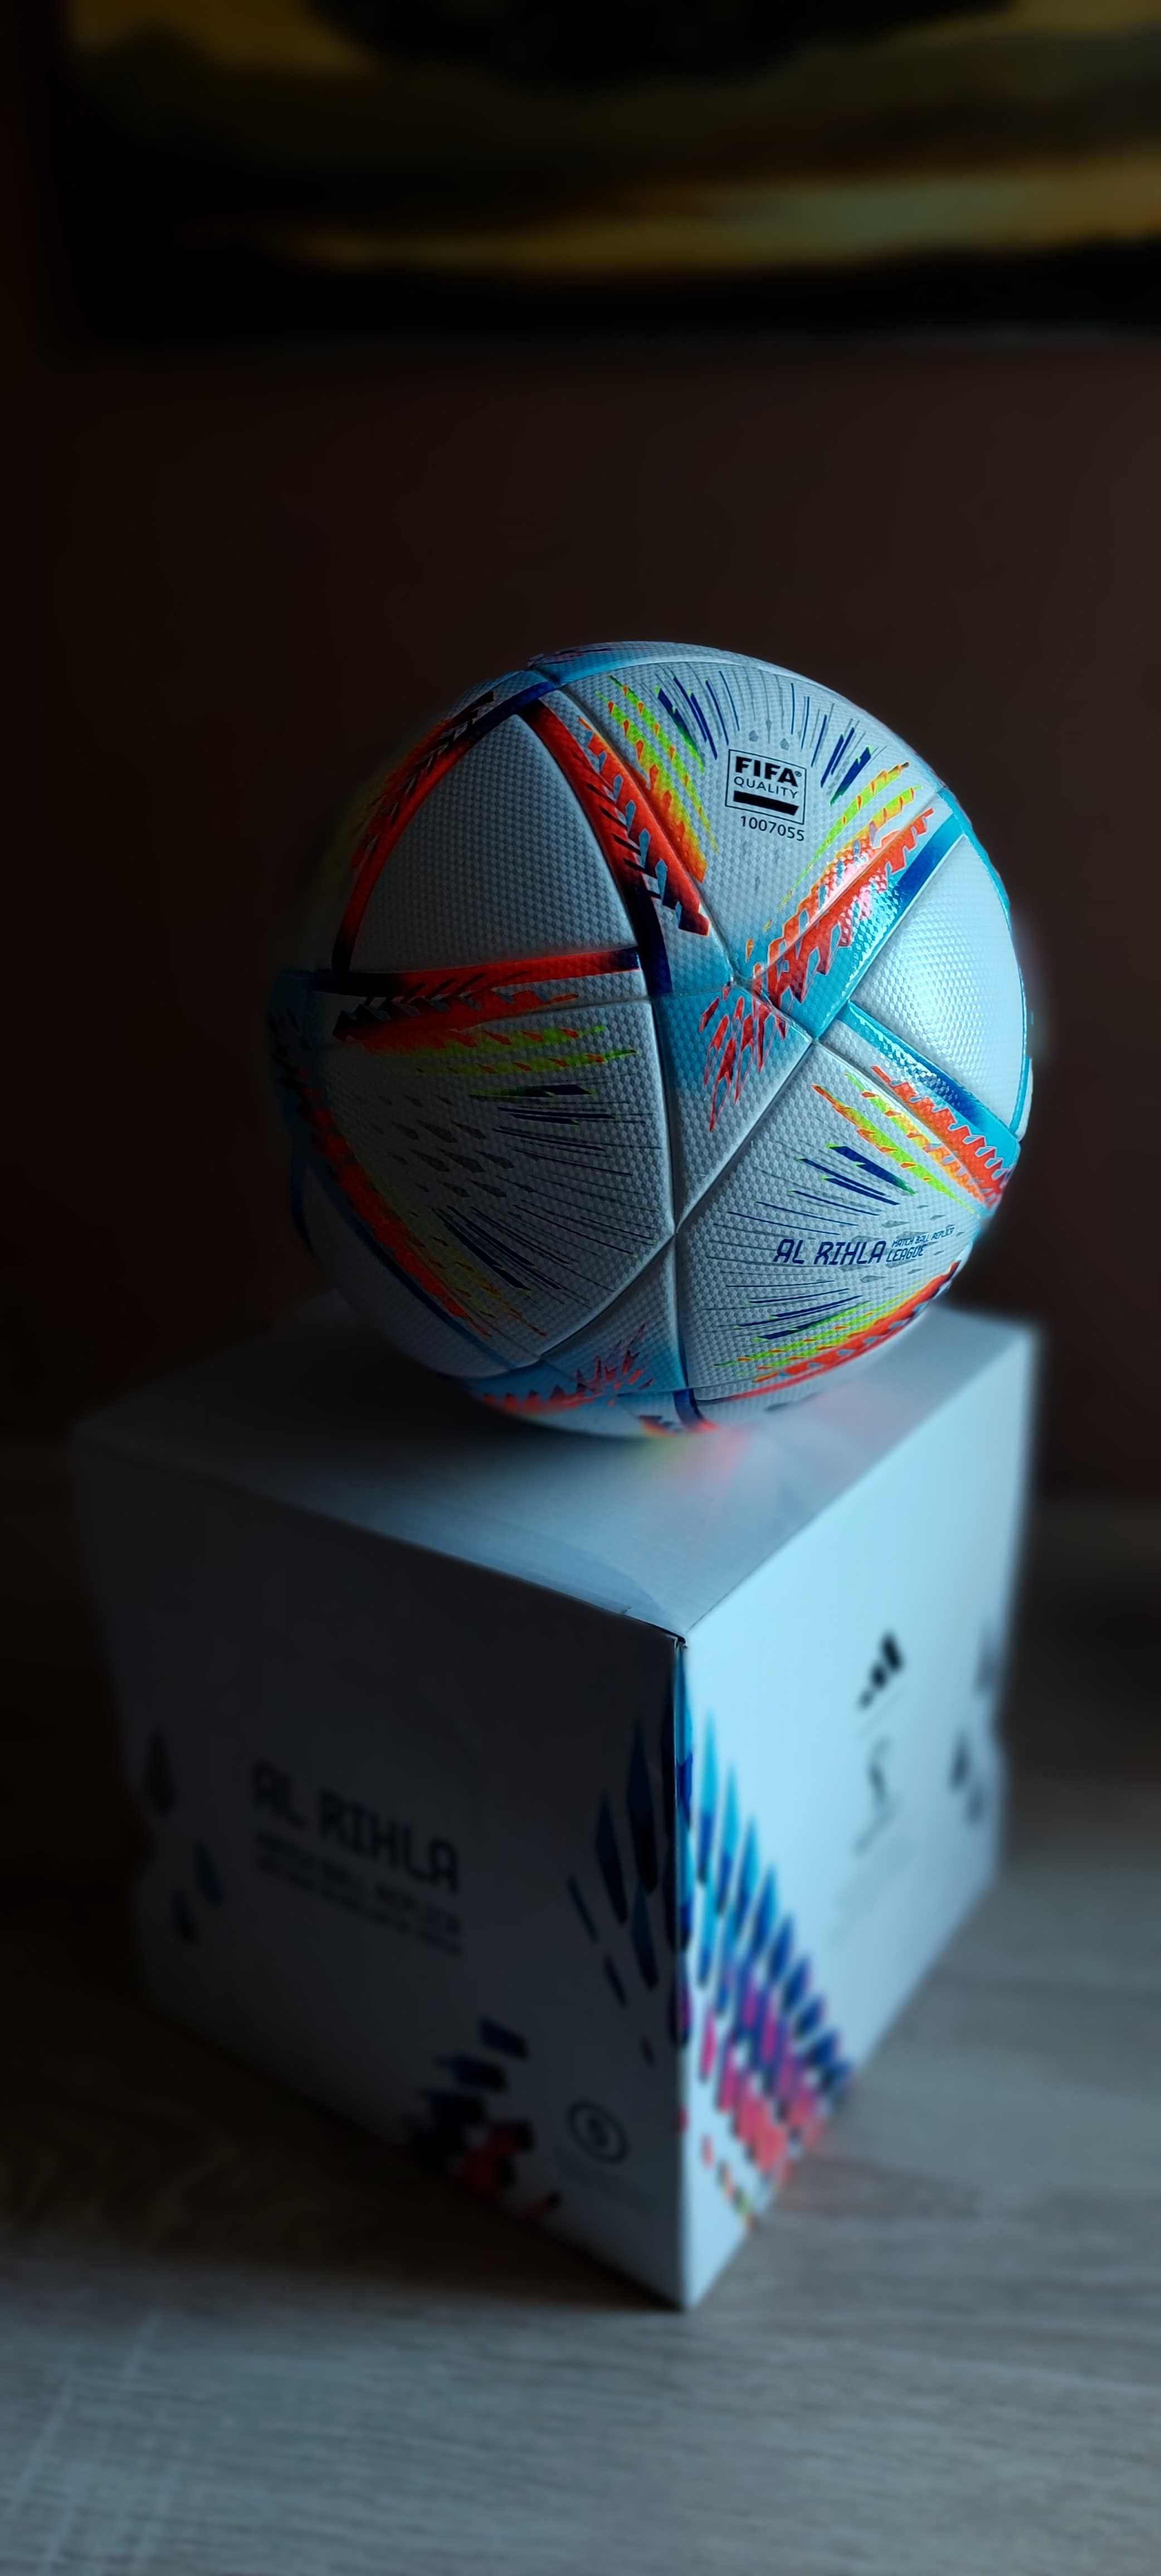 Piłka nożna Adidas FIFA World Cup Qatar 2022***